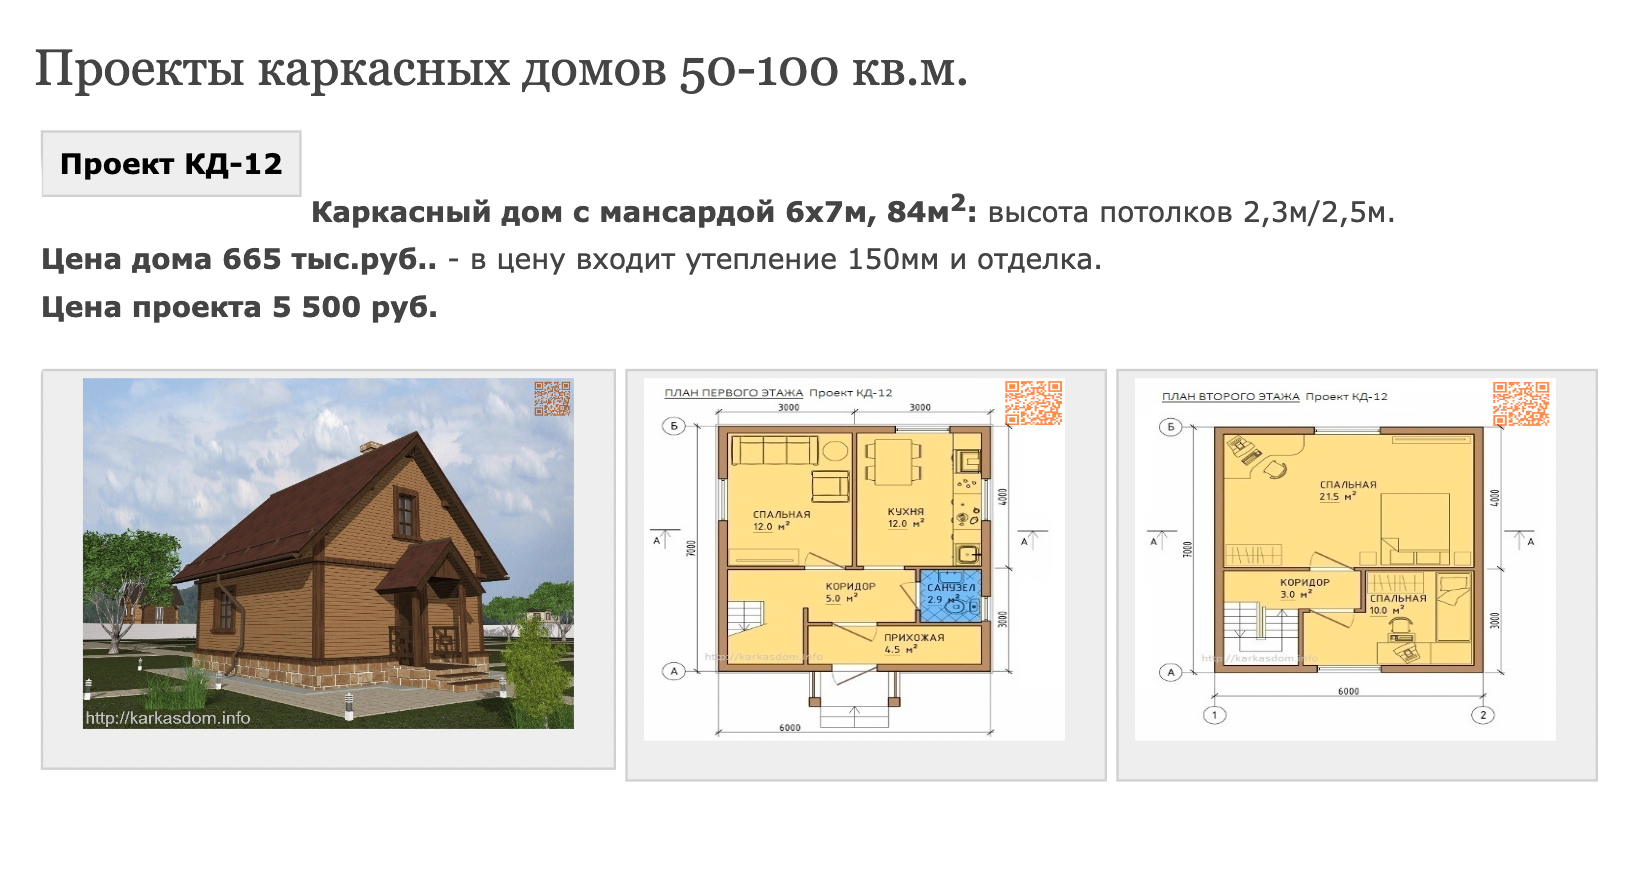 Как строят деревянные каркасные дома?